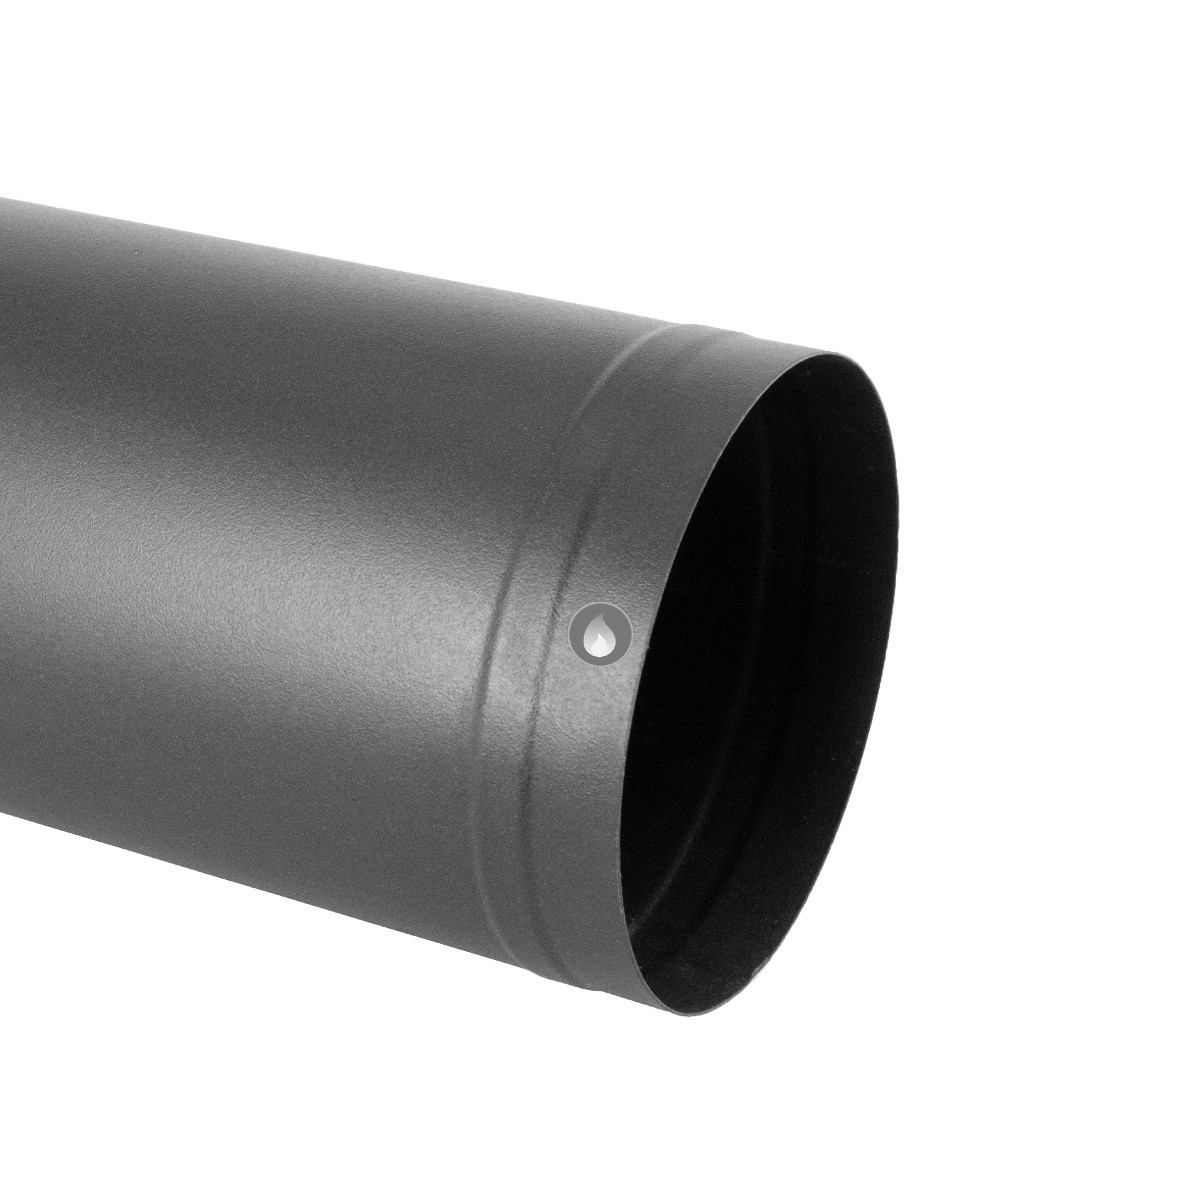 Reduccion tubo vitrificada 250 a 200 mm